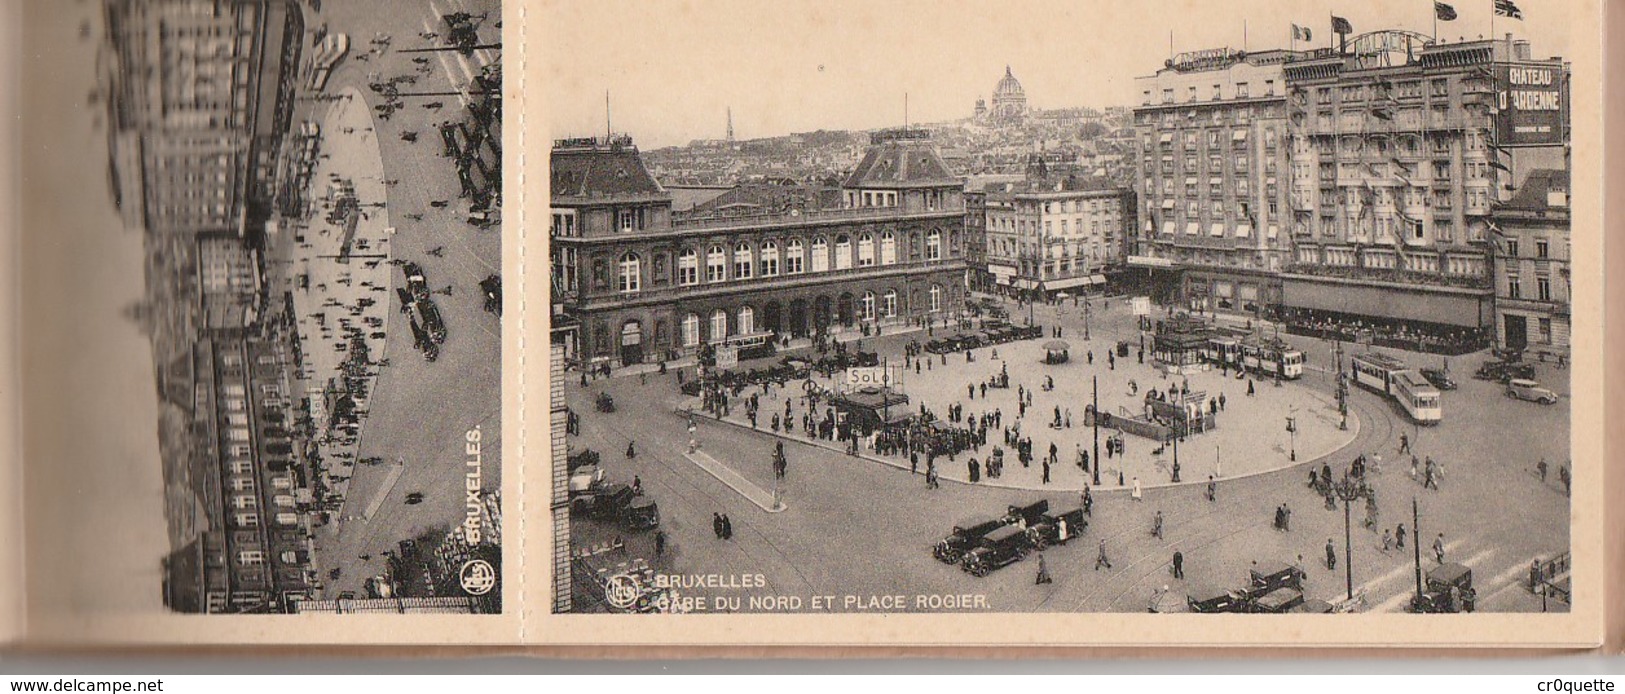 BELGIQUE BRUXELLES BRUSSELS - LOT DE 12 VIEILLES CARTES POSTALES  vers 1920